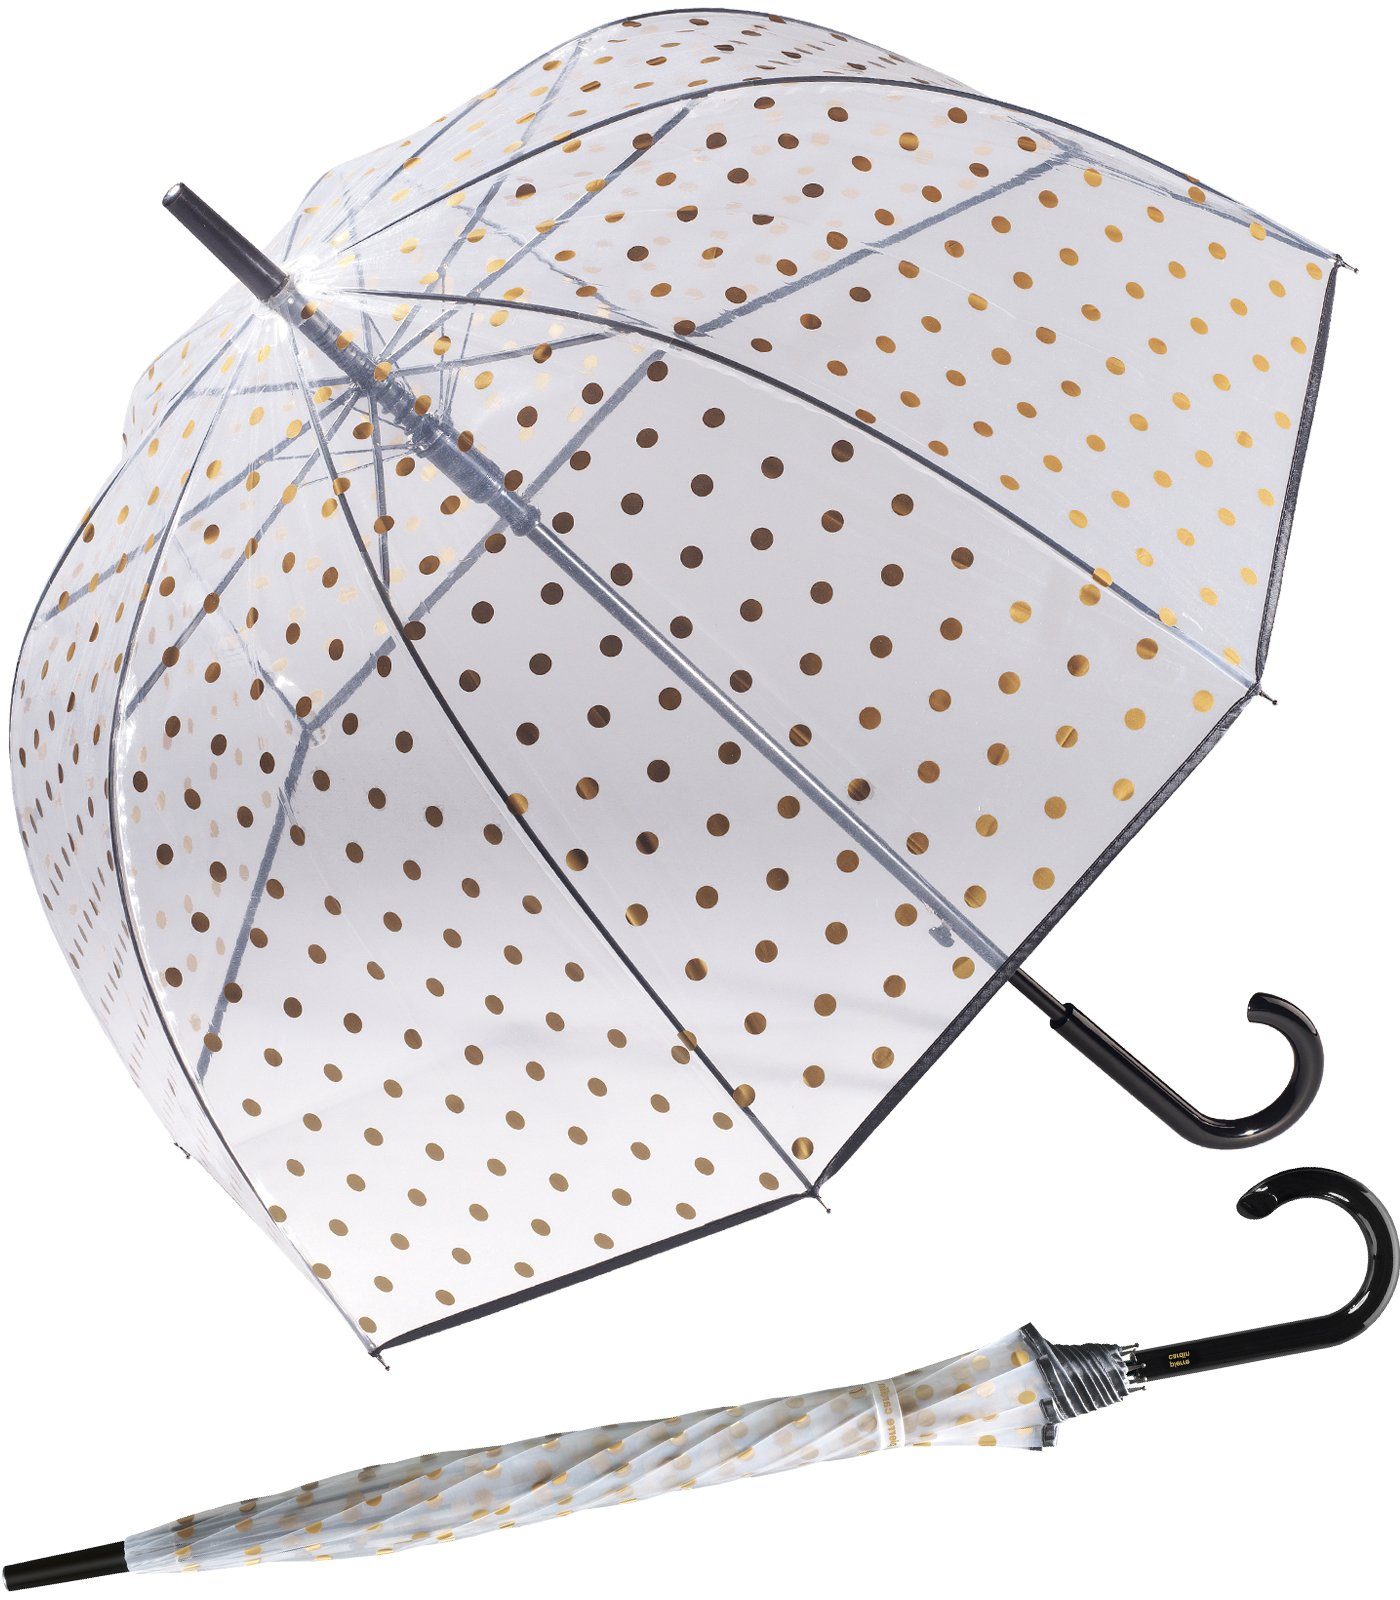 Pierre Cardin Langregenschirm Glockenschirm Automatik Metallic Dots gold, ein eleganter Schirm mit Durchblick